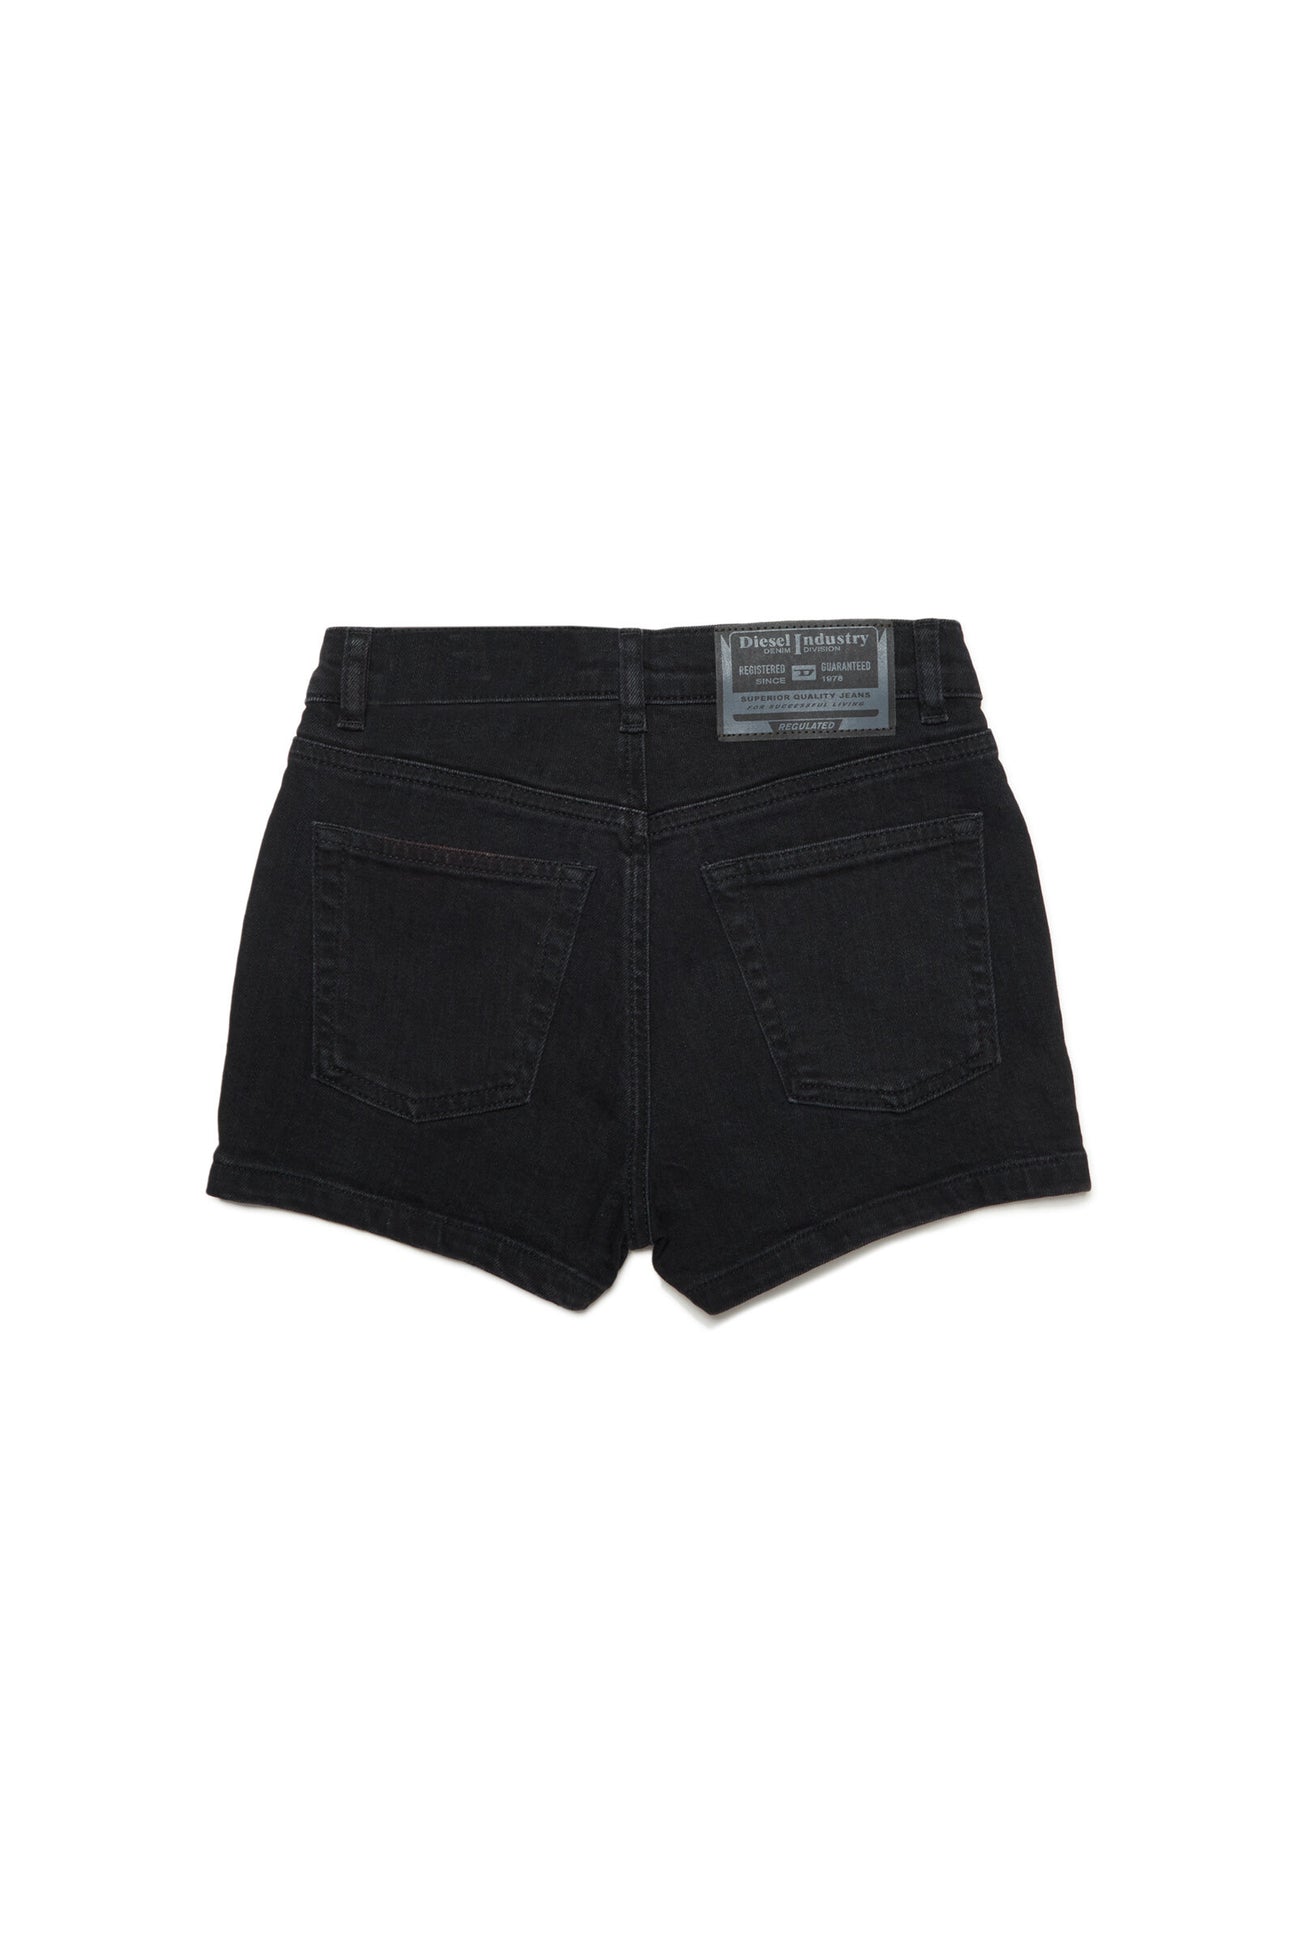 Pantalones cortos con 5 bolsillos de mezclilla negra Pantalones cortos con 5 bolsillos de mezclilla negra